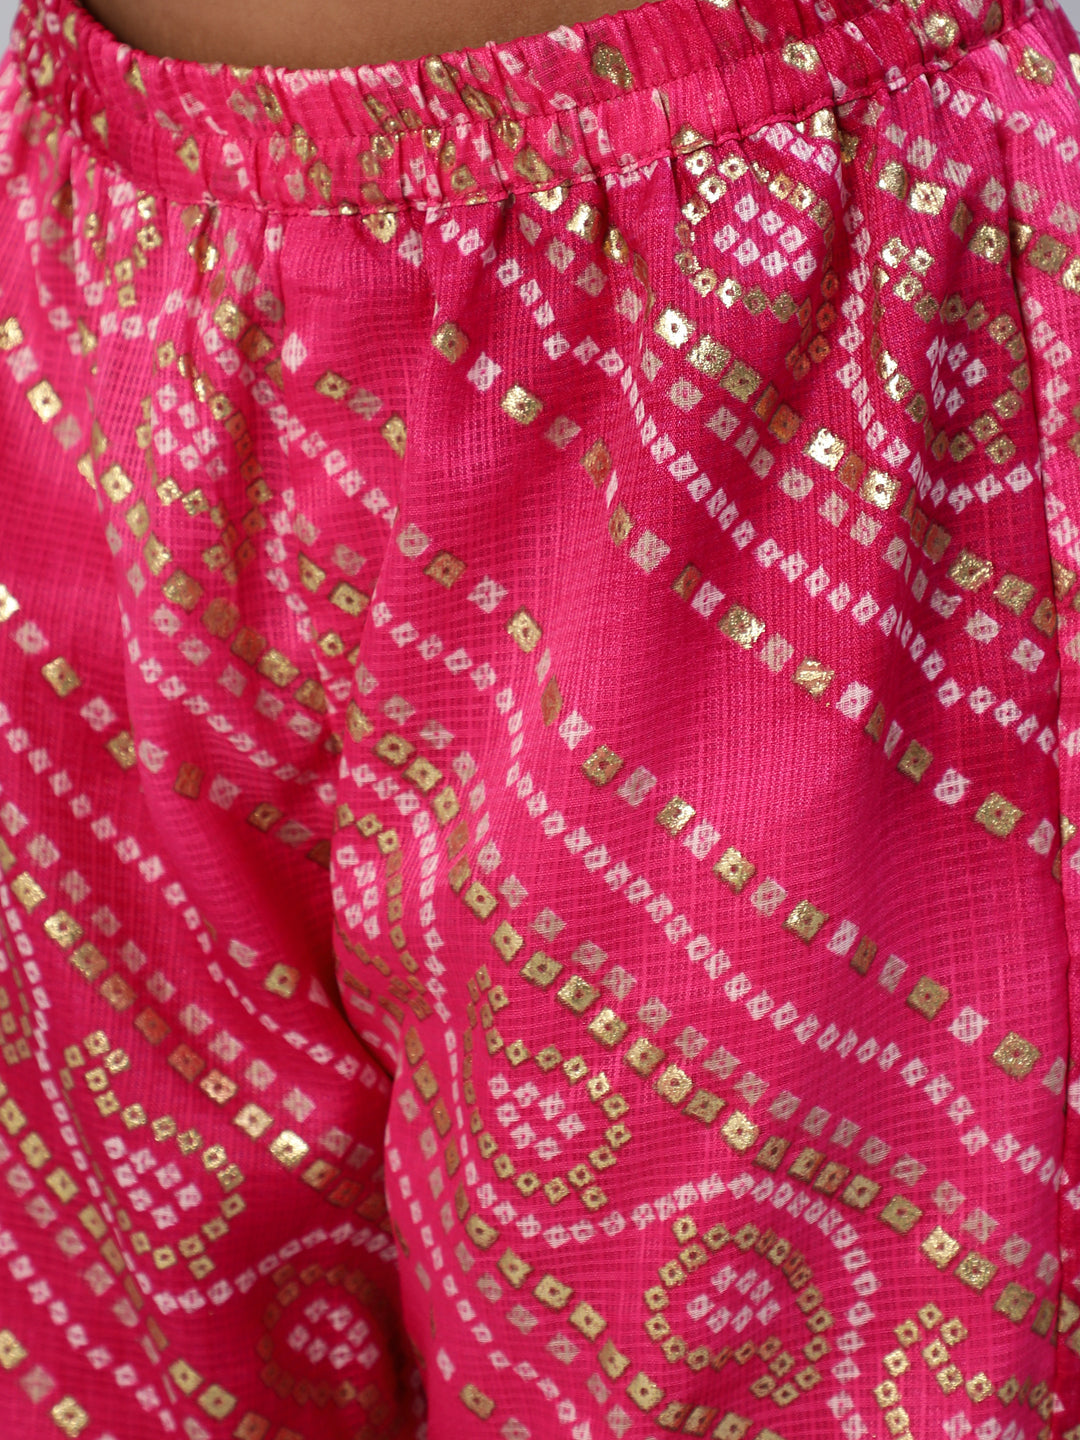 Pink Bandhani Print Top Sharara With Dupatta